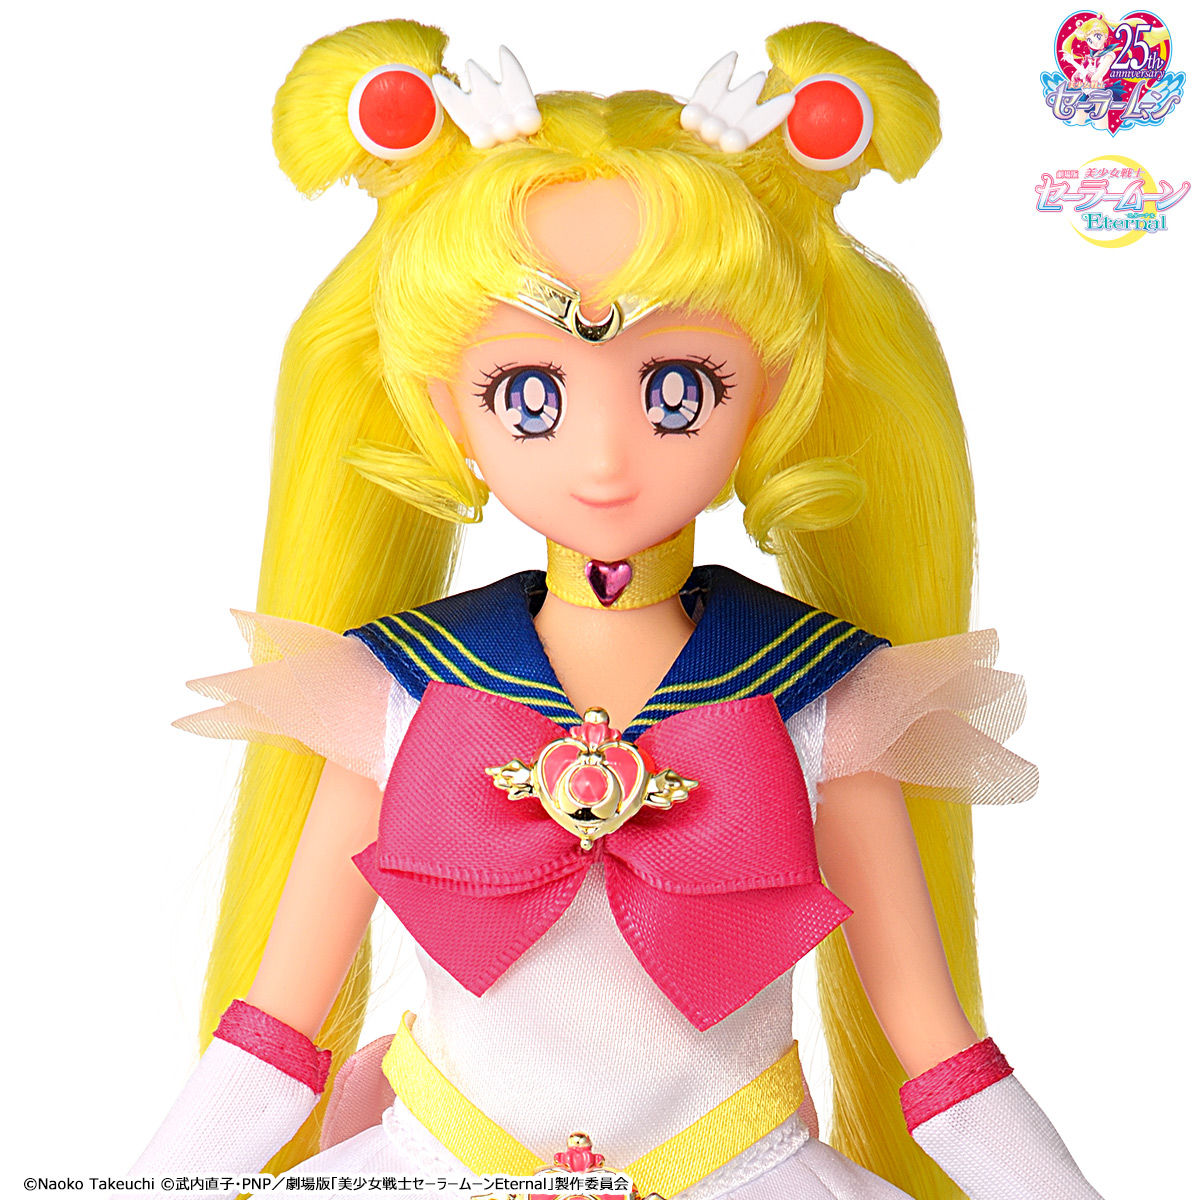 劇場版 美少女戦士セーラームーンeternal Styledoll Super Sailor Moon 美少女戦士セーラームーンシリーズ 趣味 コレクション バンダイナムコグループ公式通販サイト